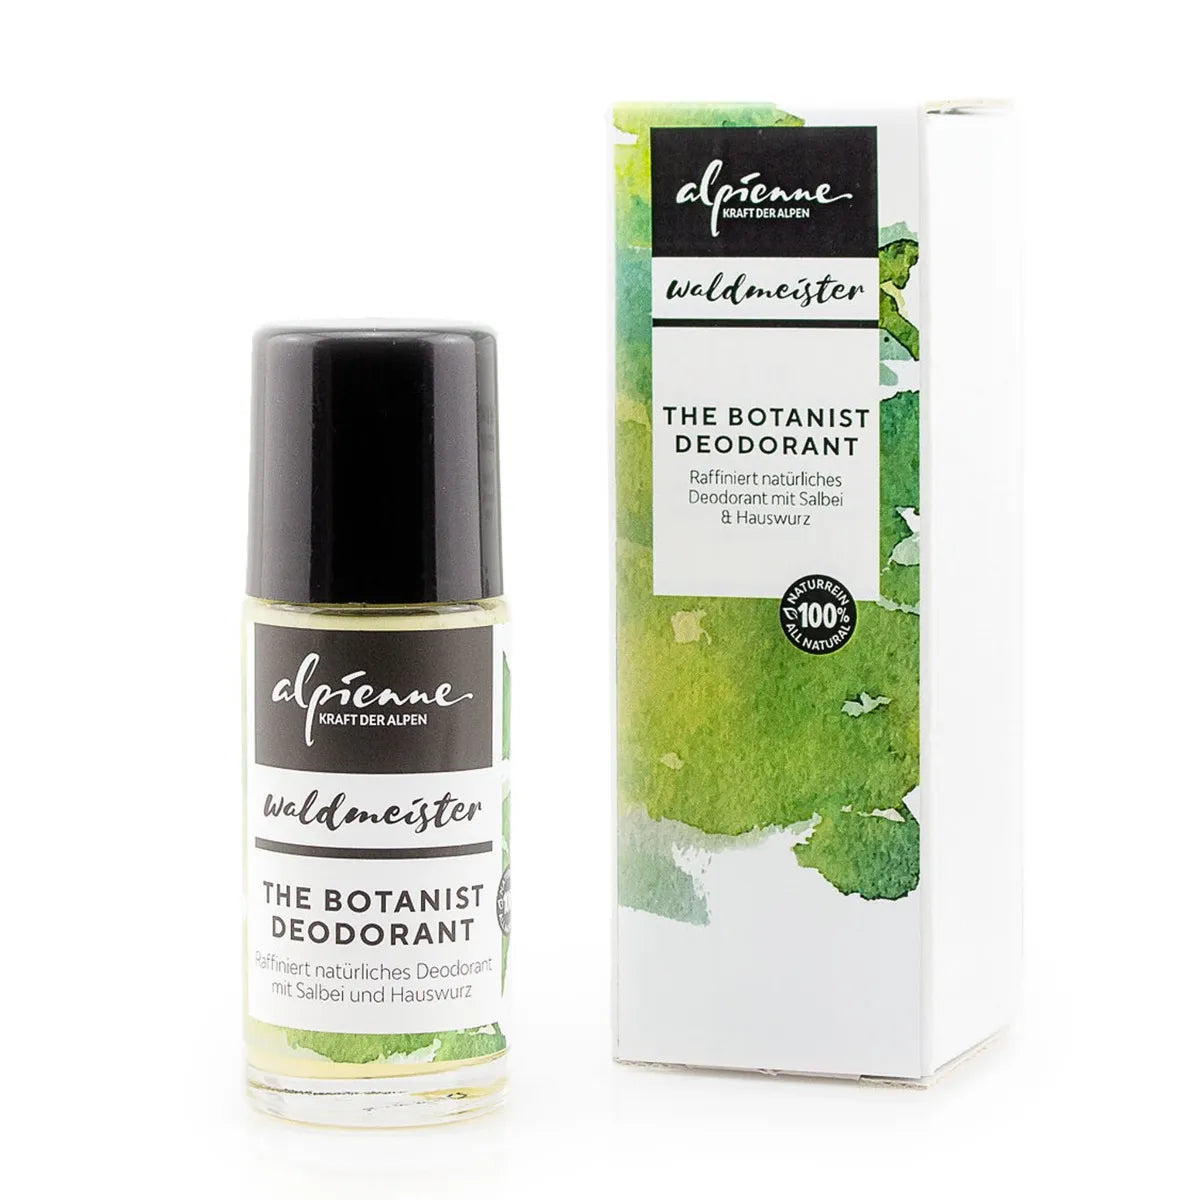 The Botanist Deodorant Raffiniert, natürliches Deodorant mit Salbei und Hauswurz